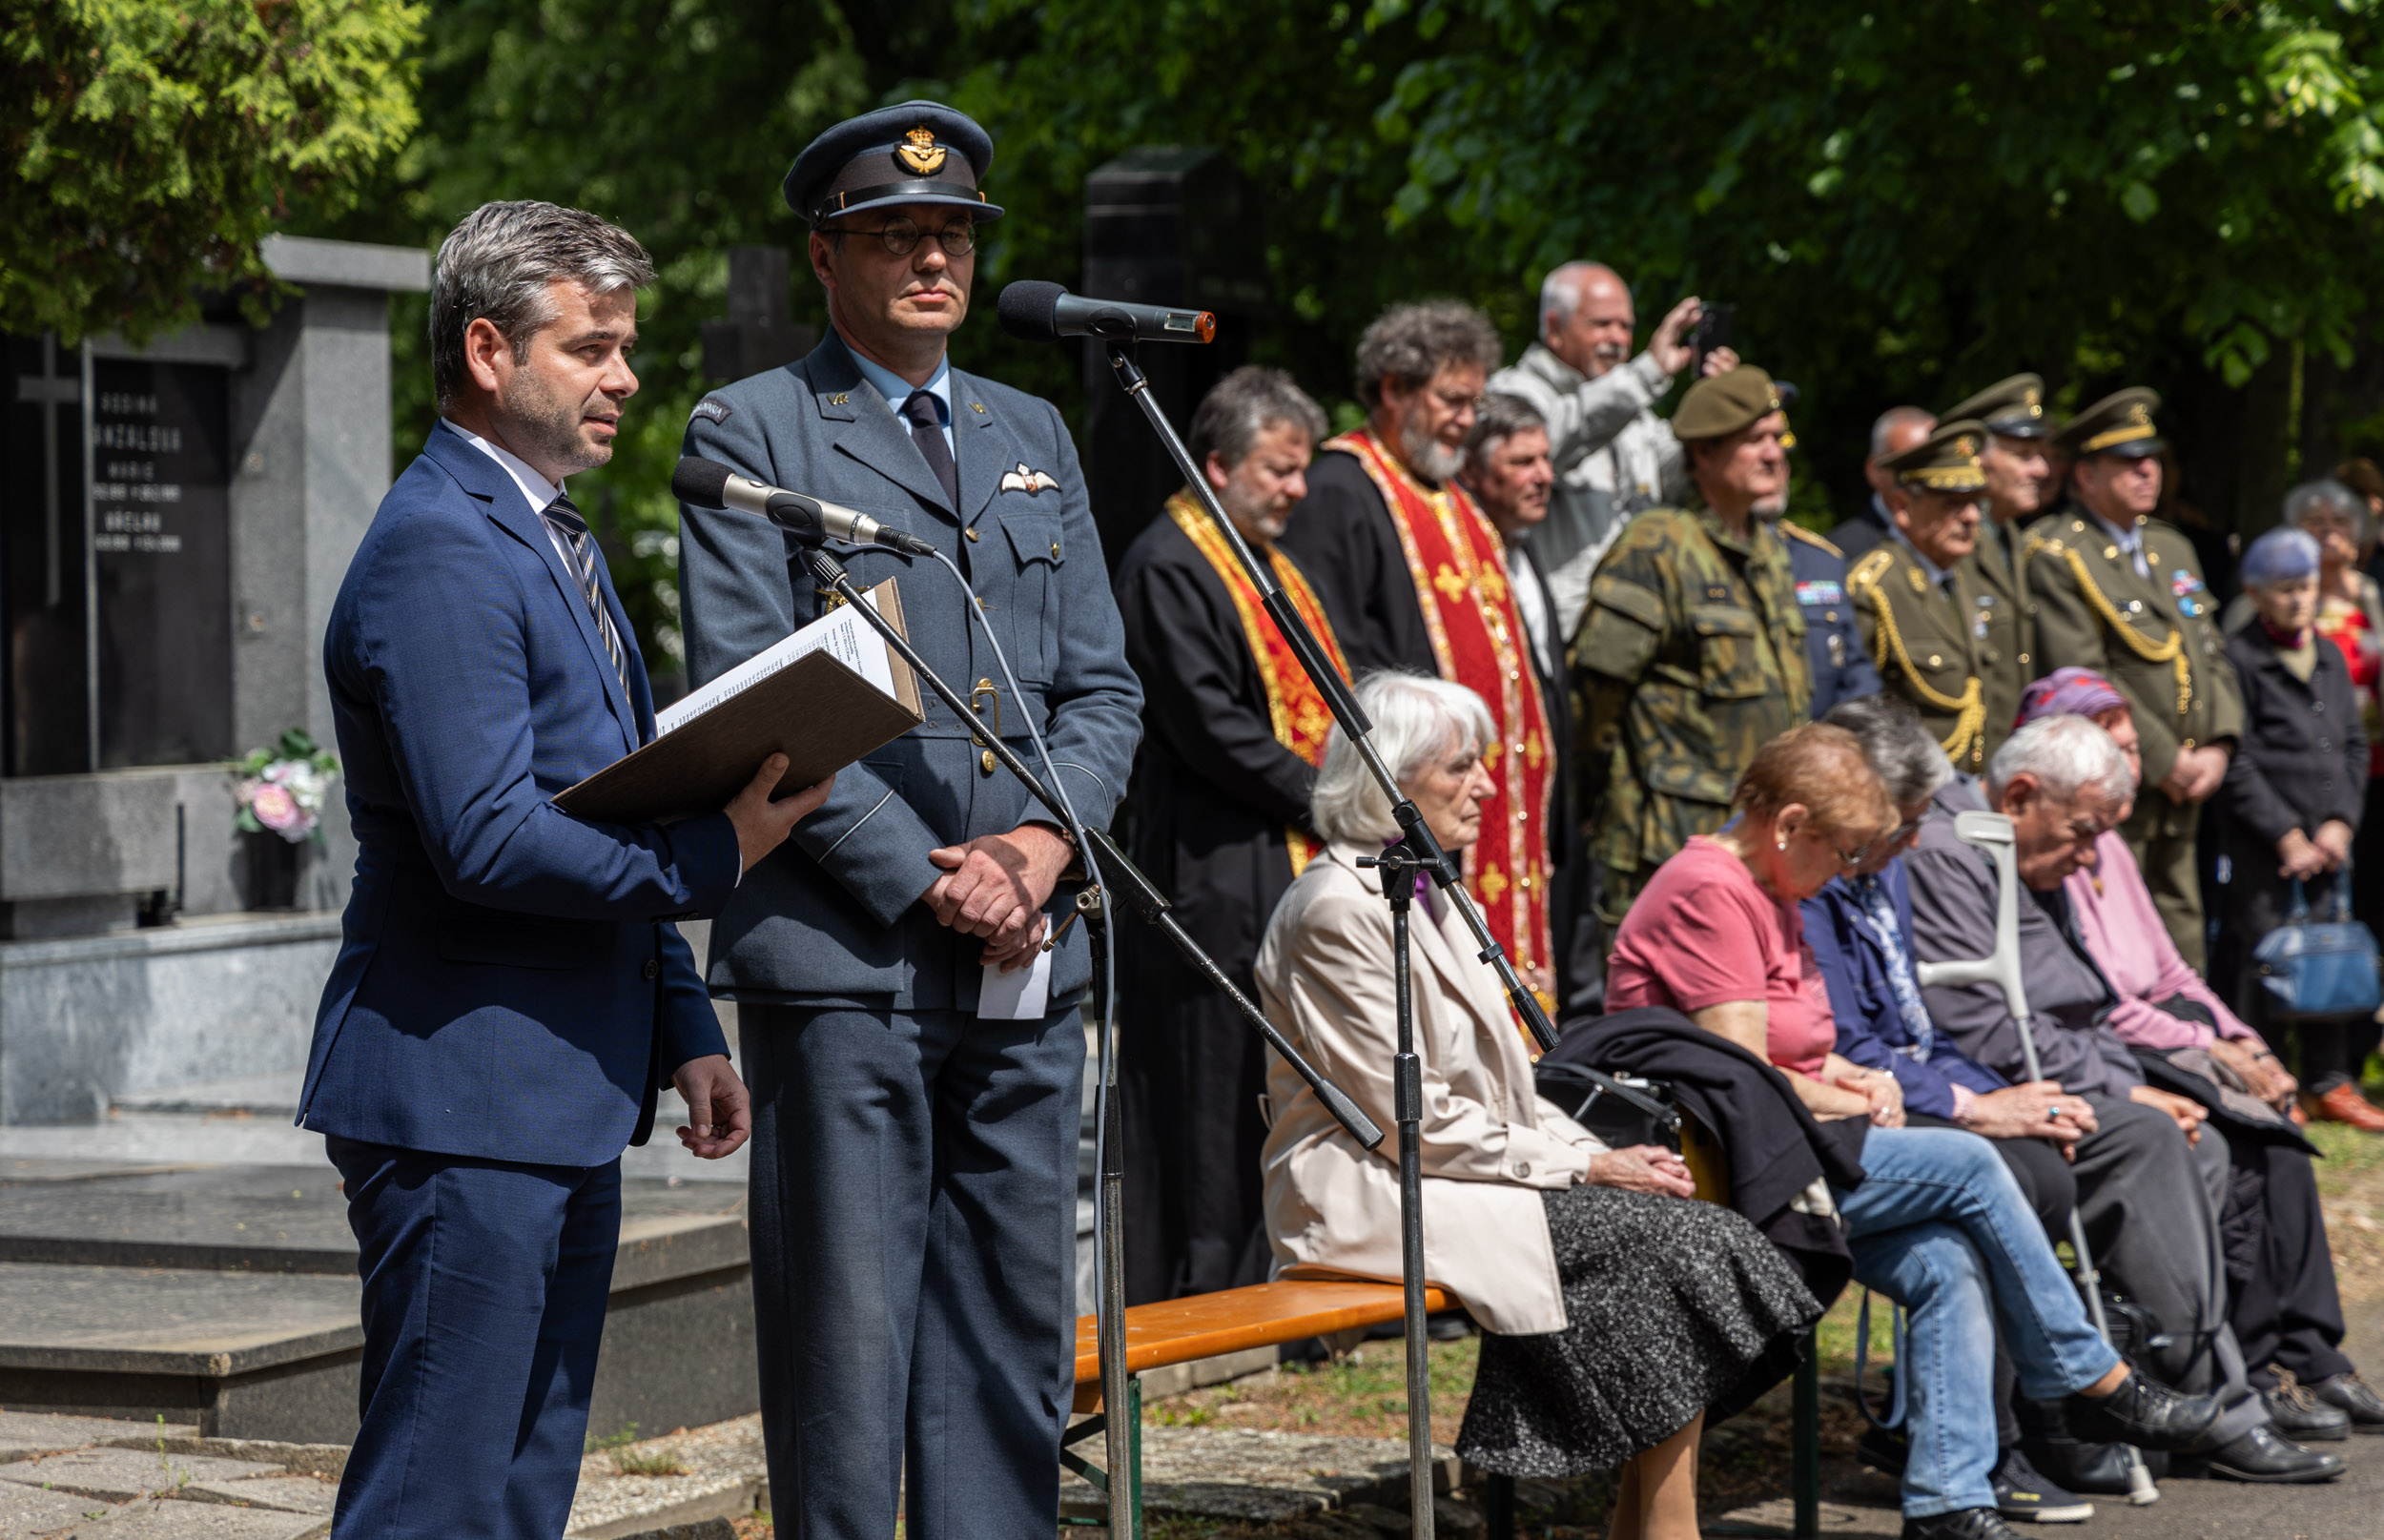 Starosta Tomáš Opatrný hovoří při pietním aktu na uctění památky Ludvíka Svobody.